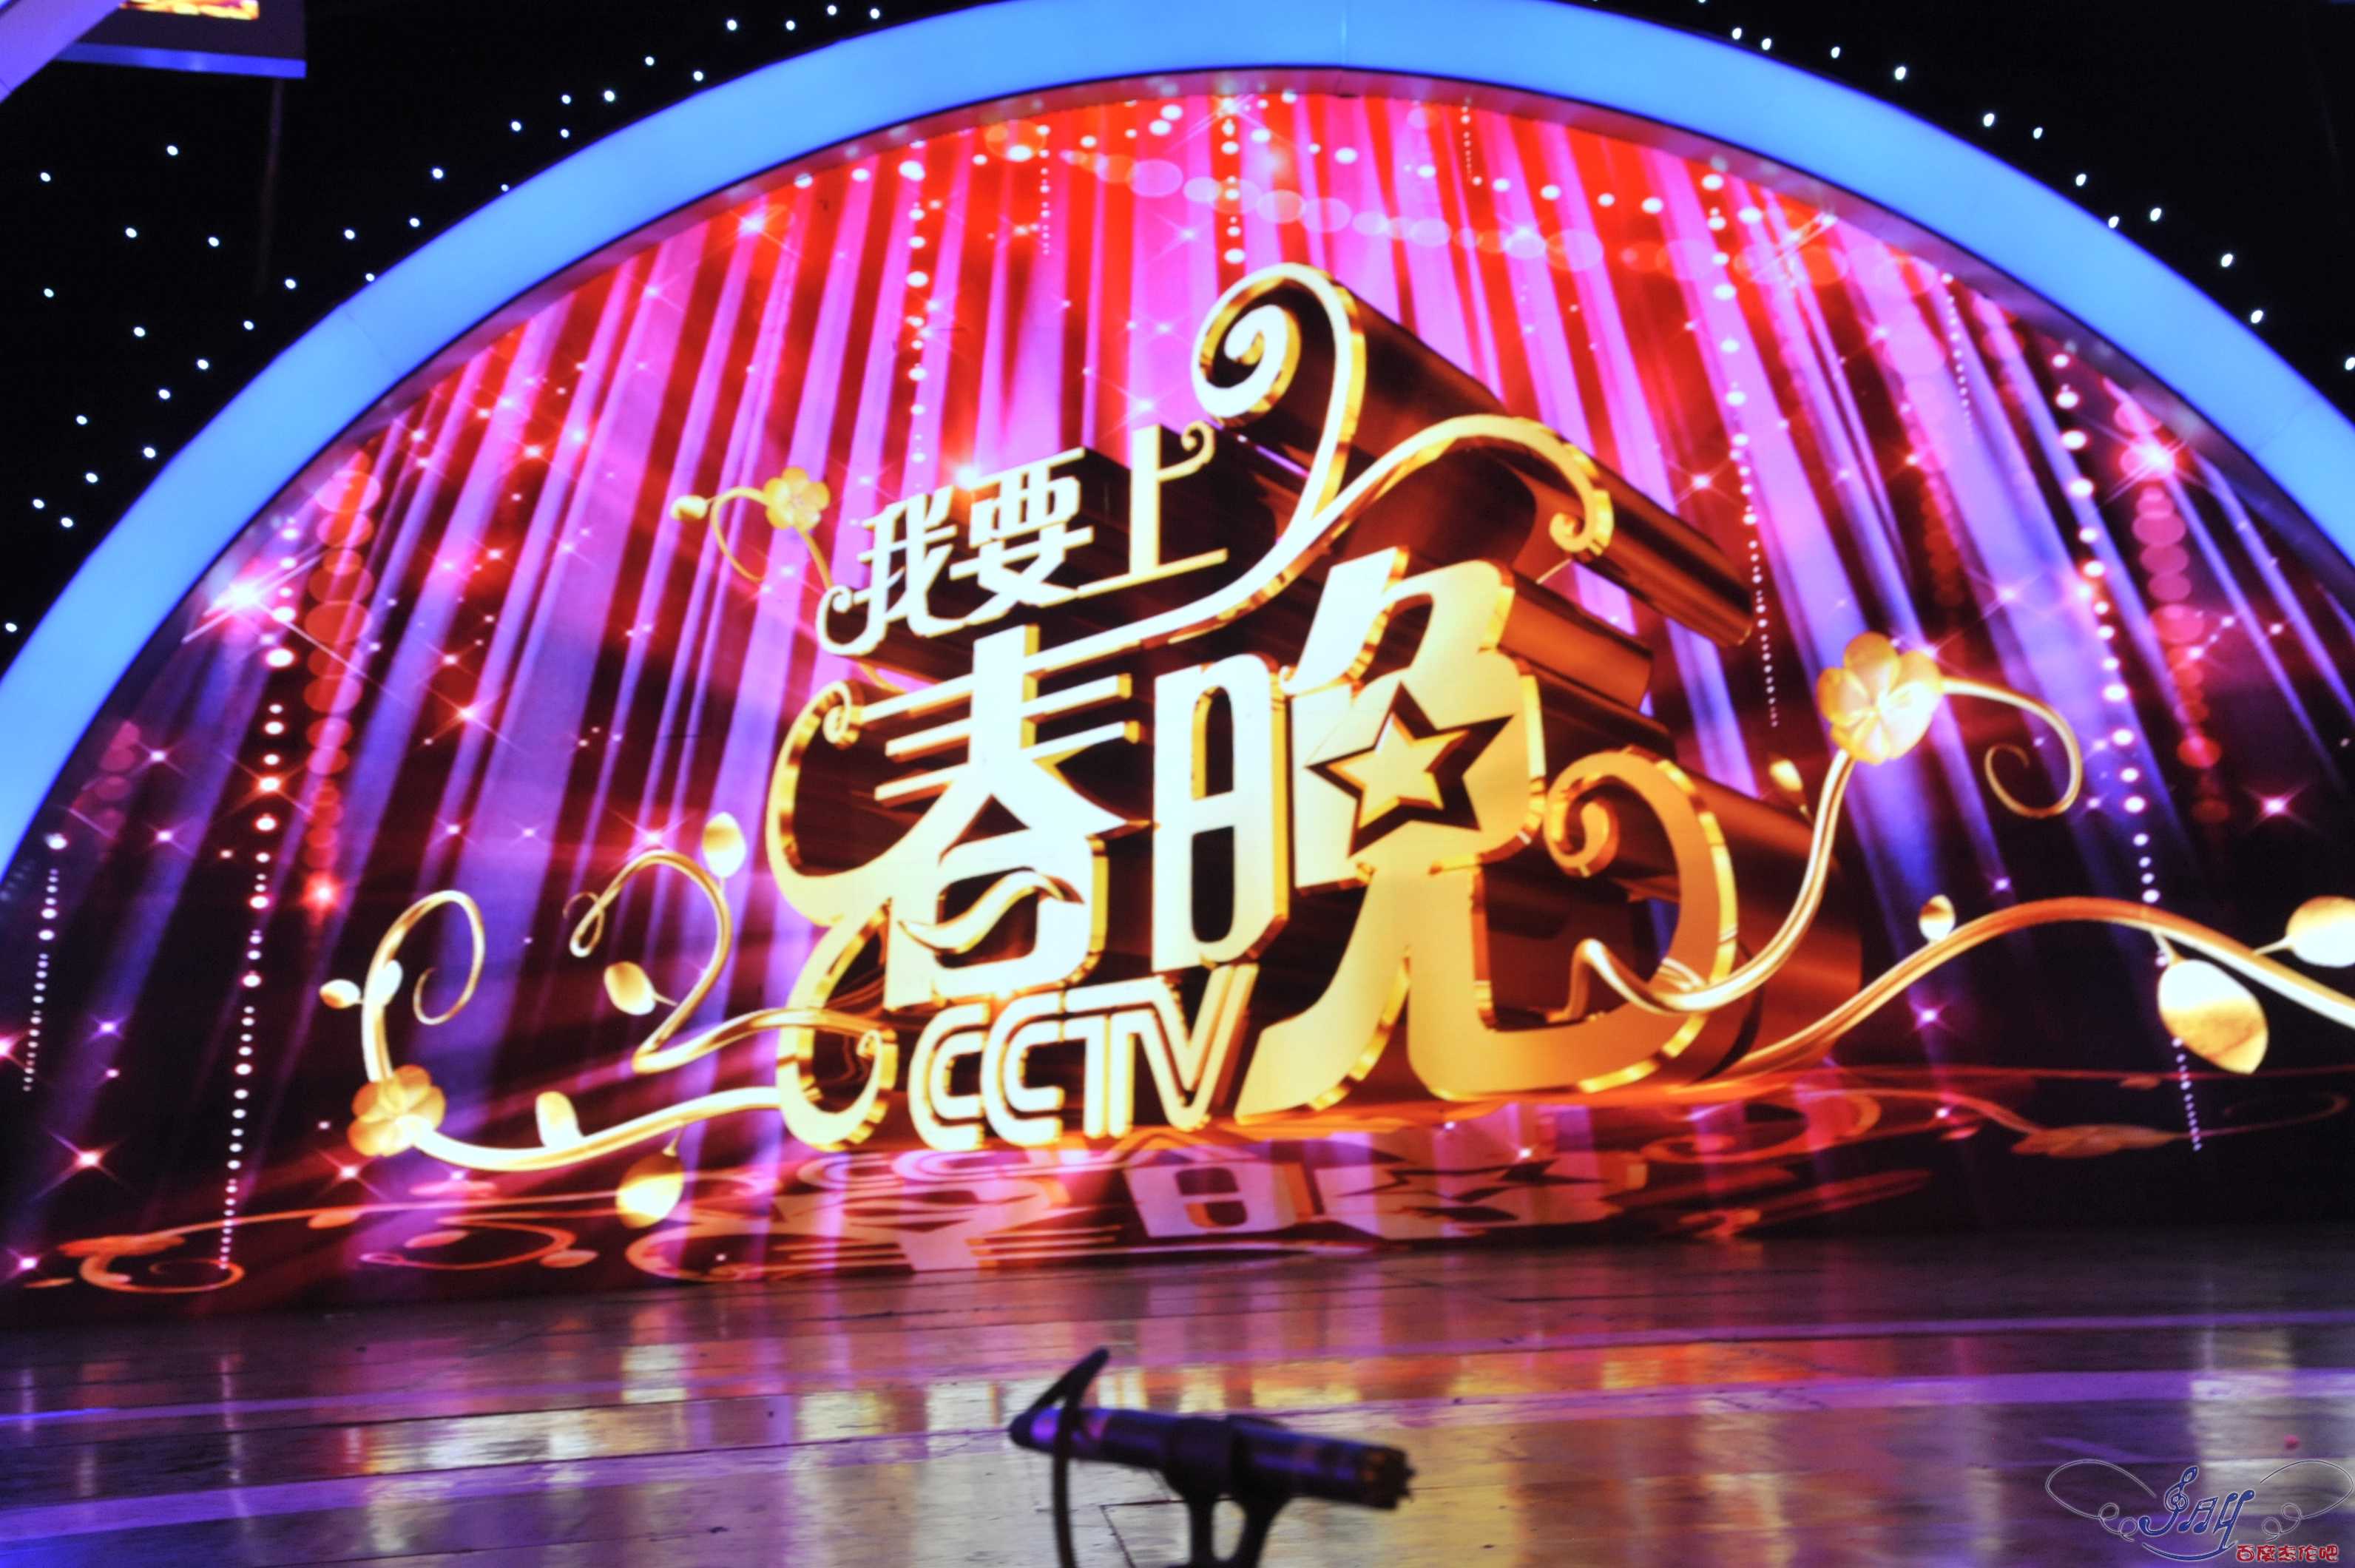 央视确定国内12家选秀节目选手上春晚_ 视频中国